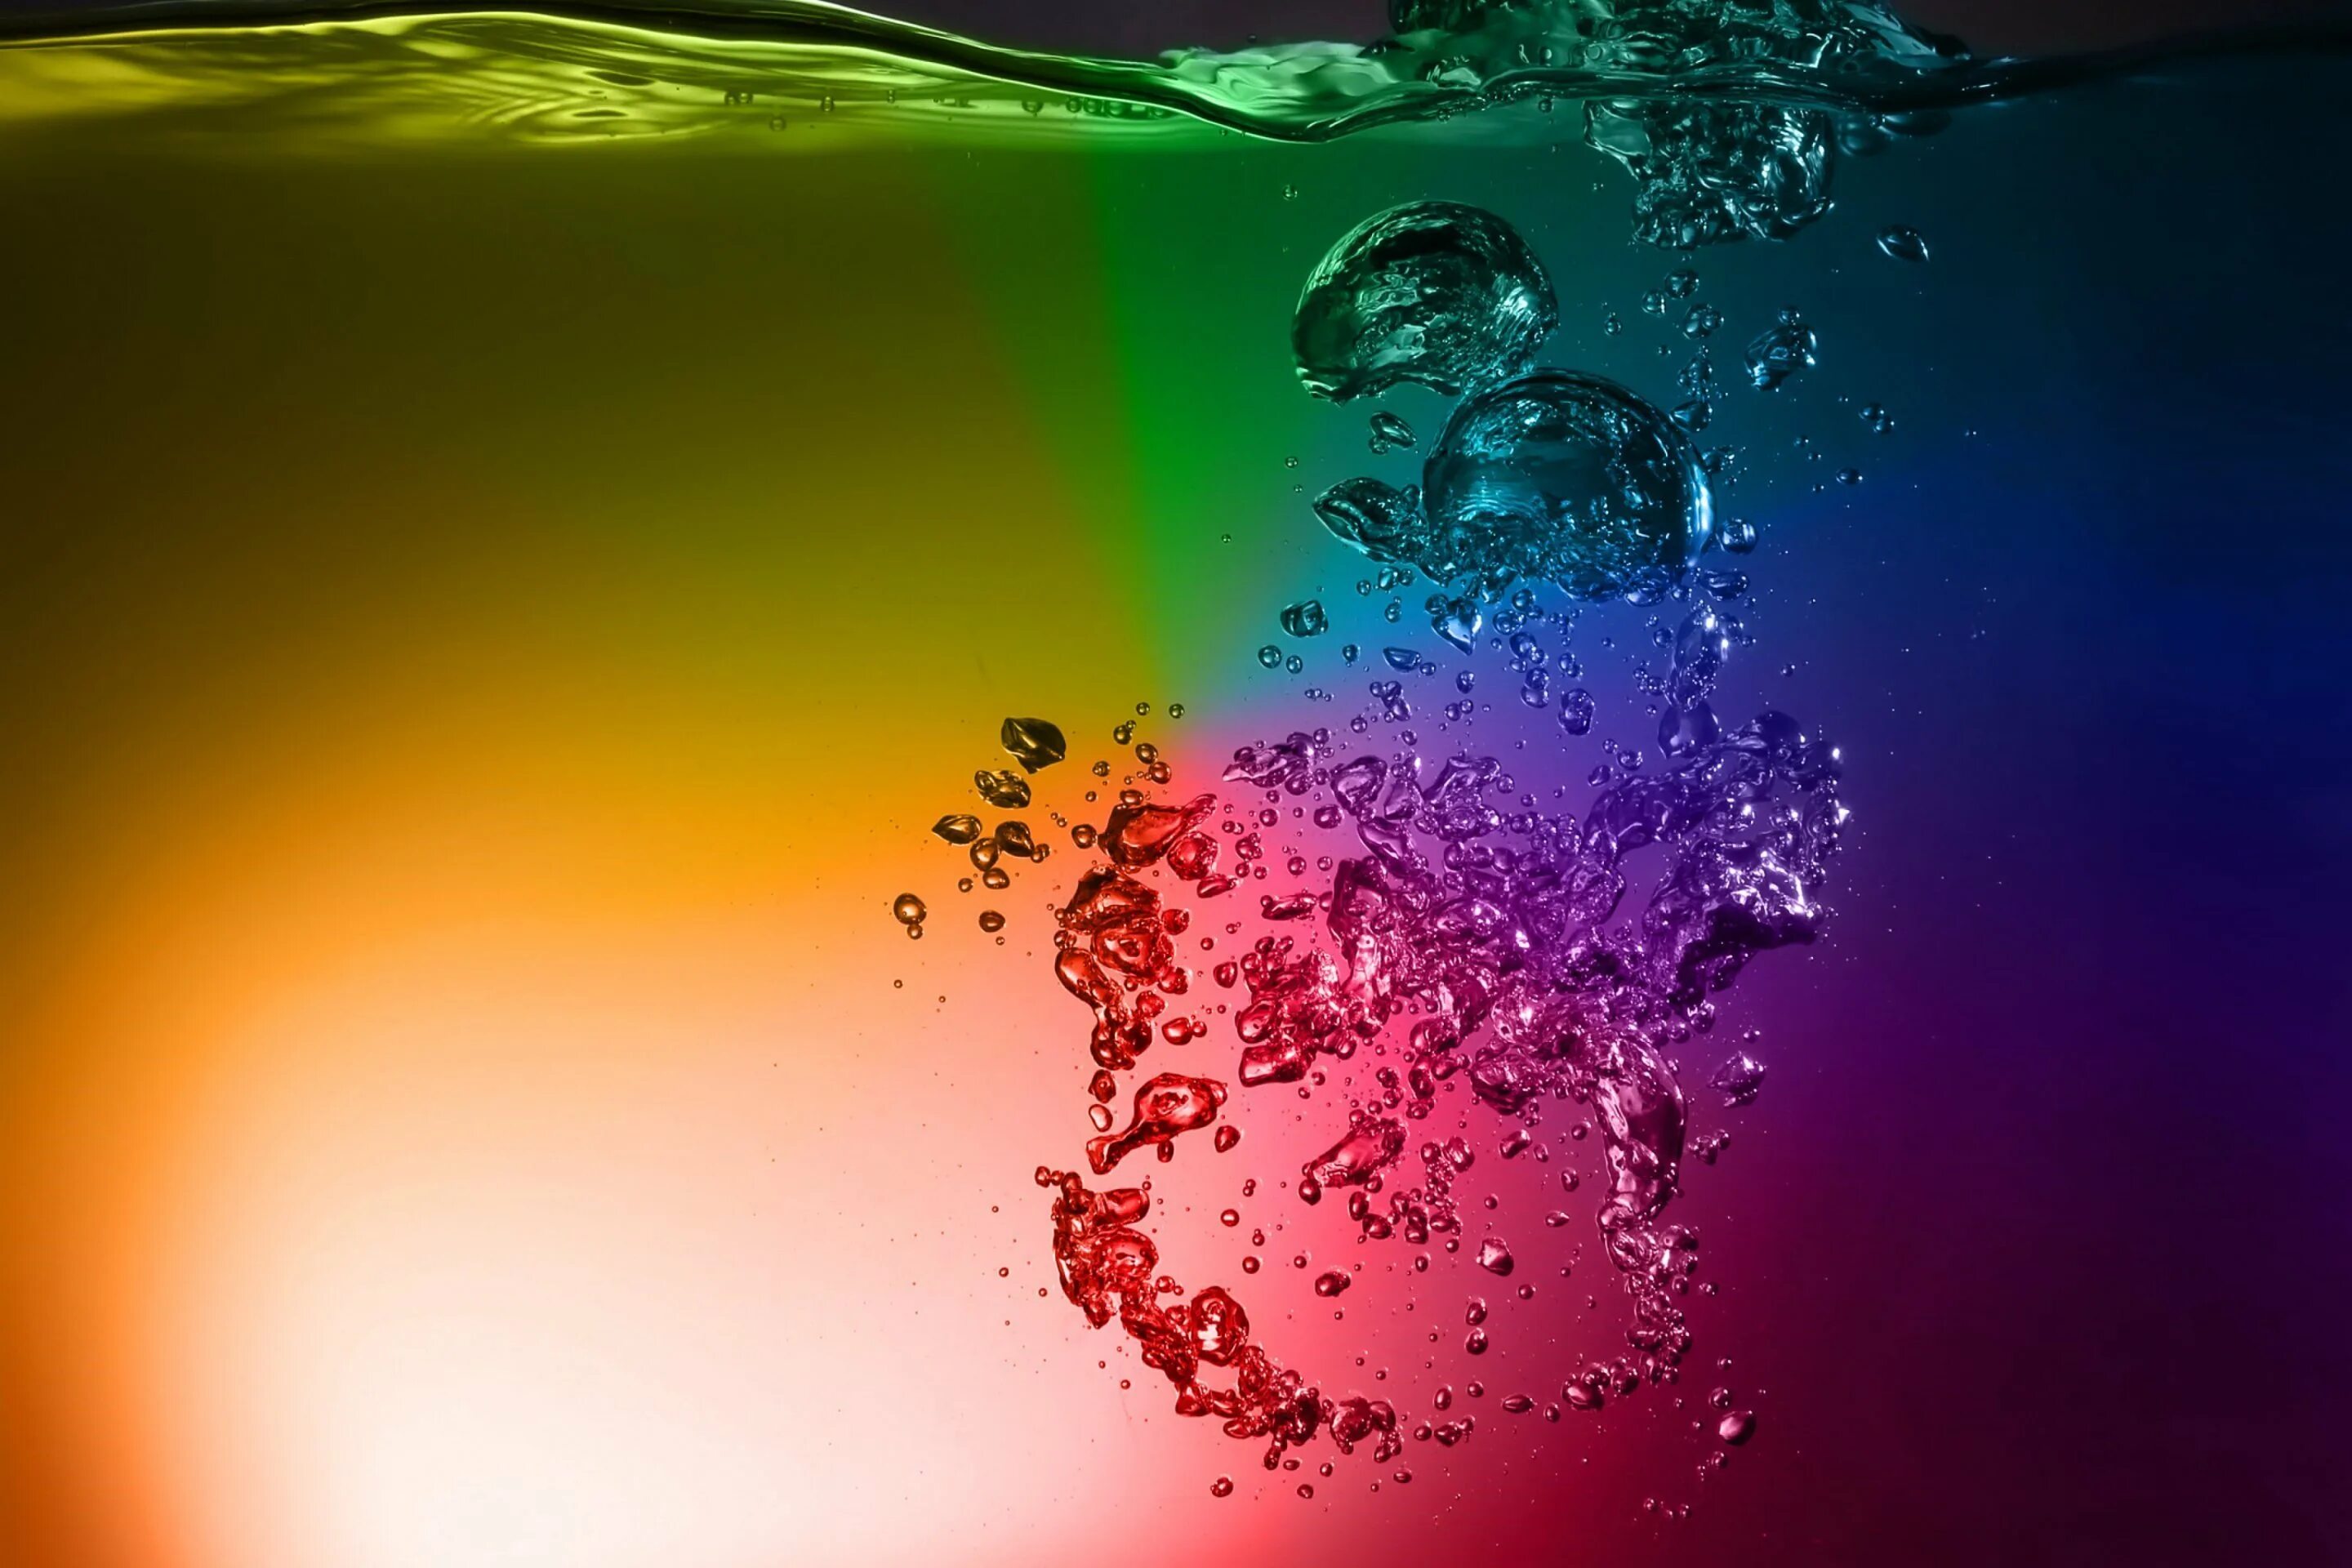 Бесплатные обои тема на андроид. Яркие обои. Красочная заставка. Красивый фон на телефон. Разноцветные капли воды.